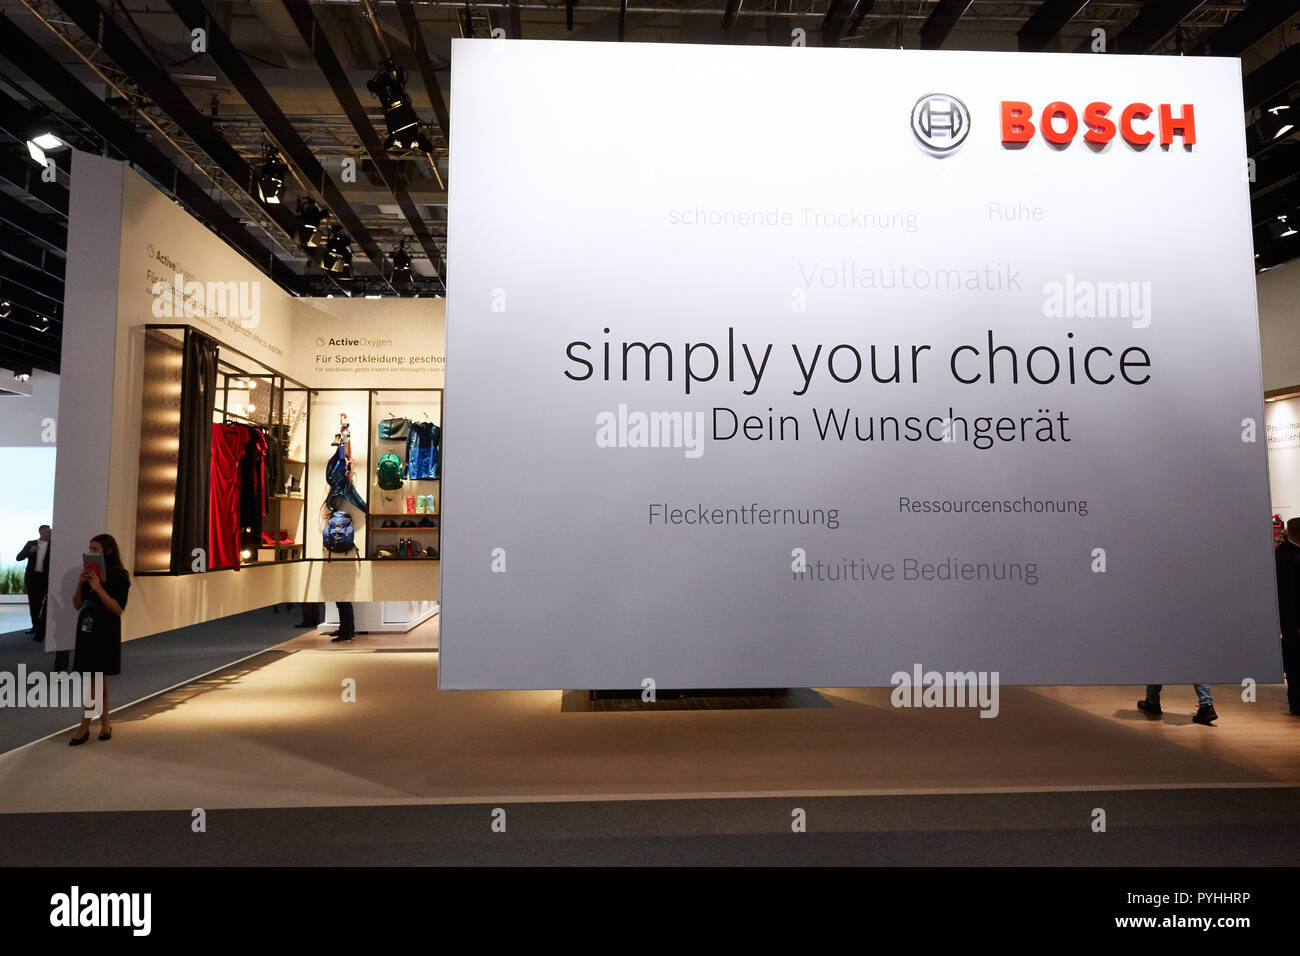 Berlin, Allemagne - La société allemande Bosch présentera ses innovations dans le domaine des appareils électroménagers à l'IFA 2018. Banque D'Images